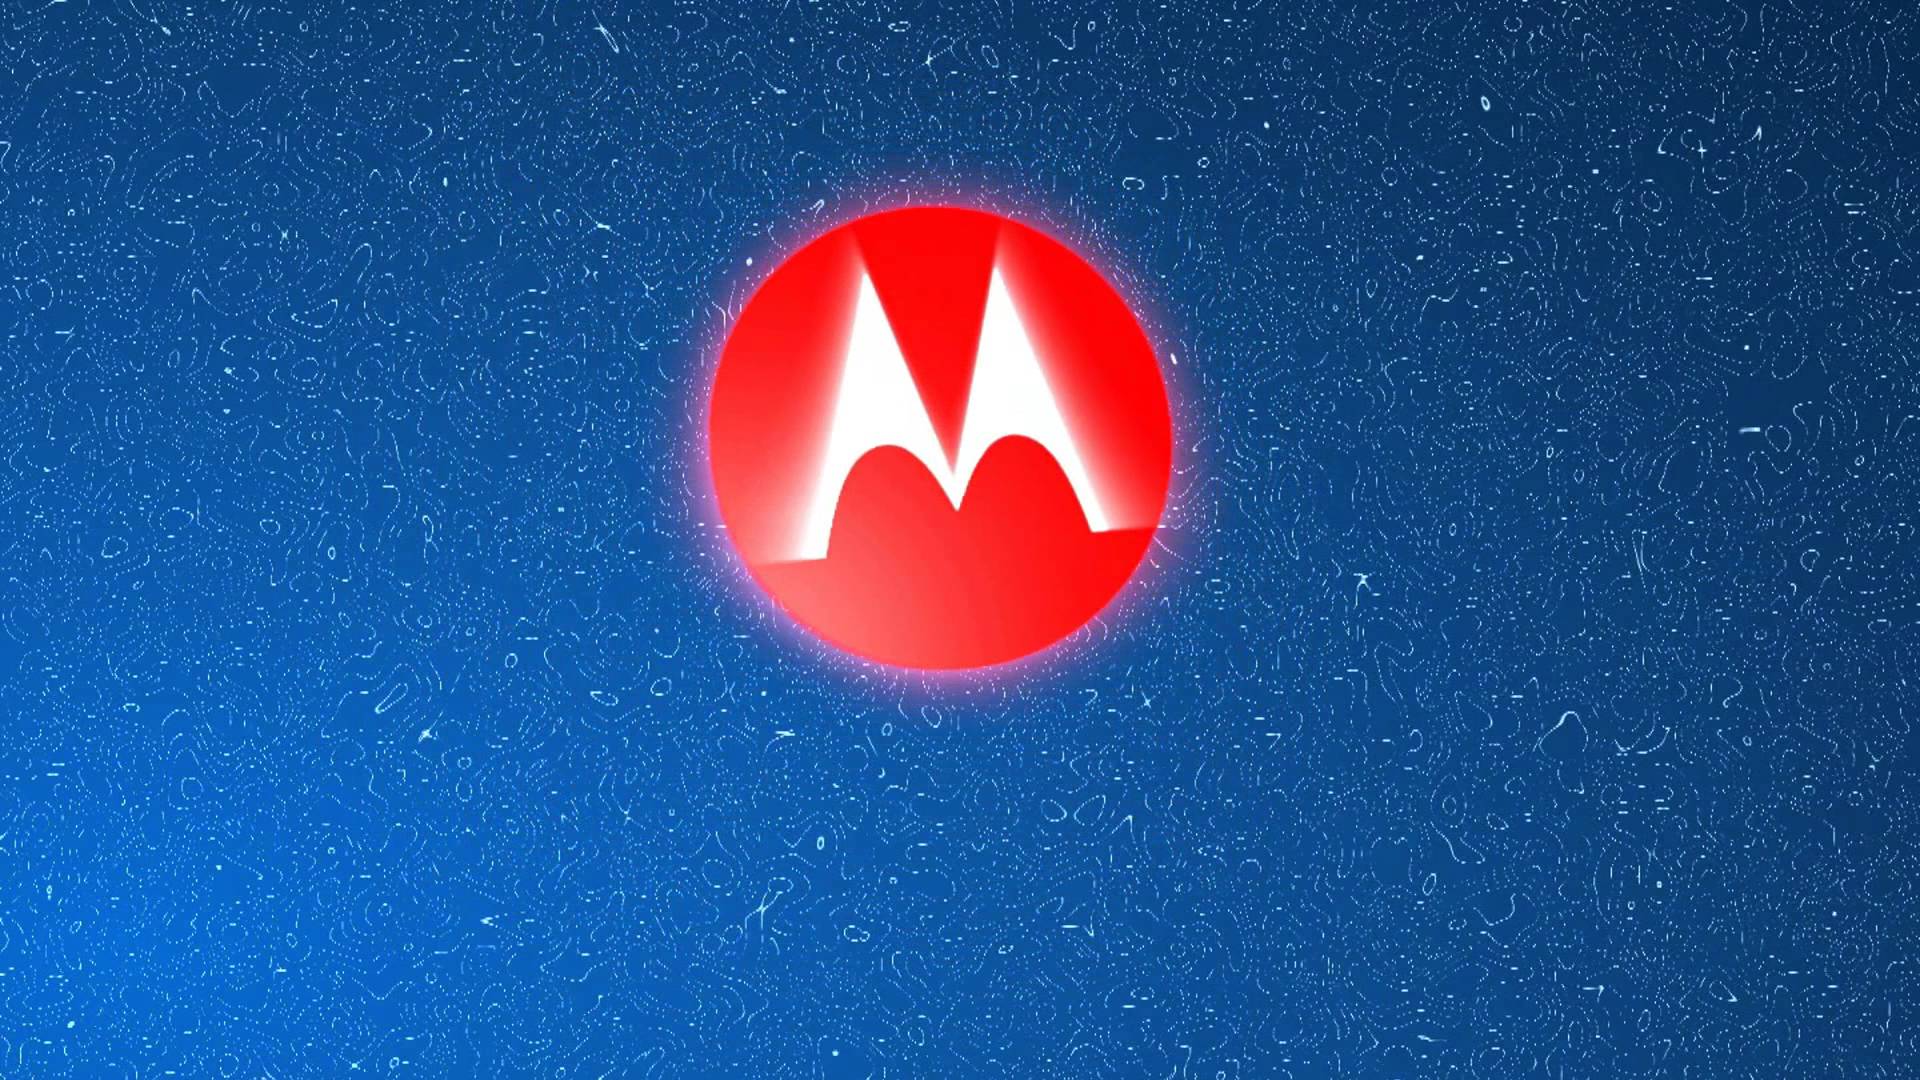 Motorola Logo 2K Wallpapers